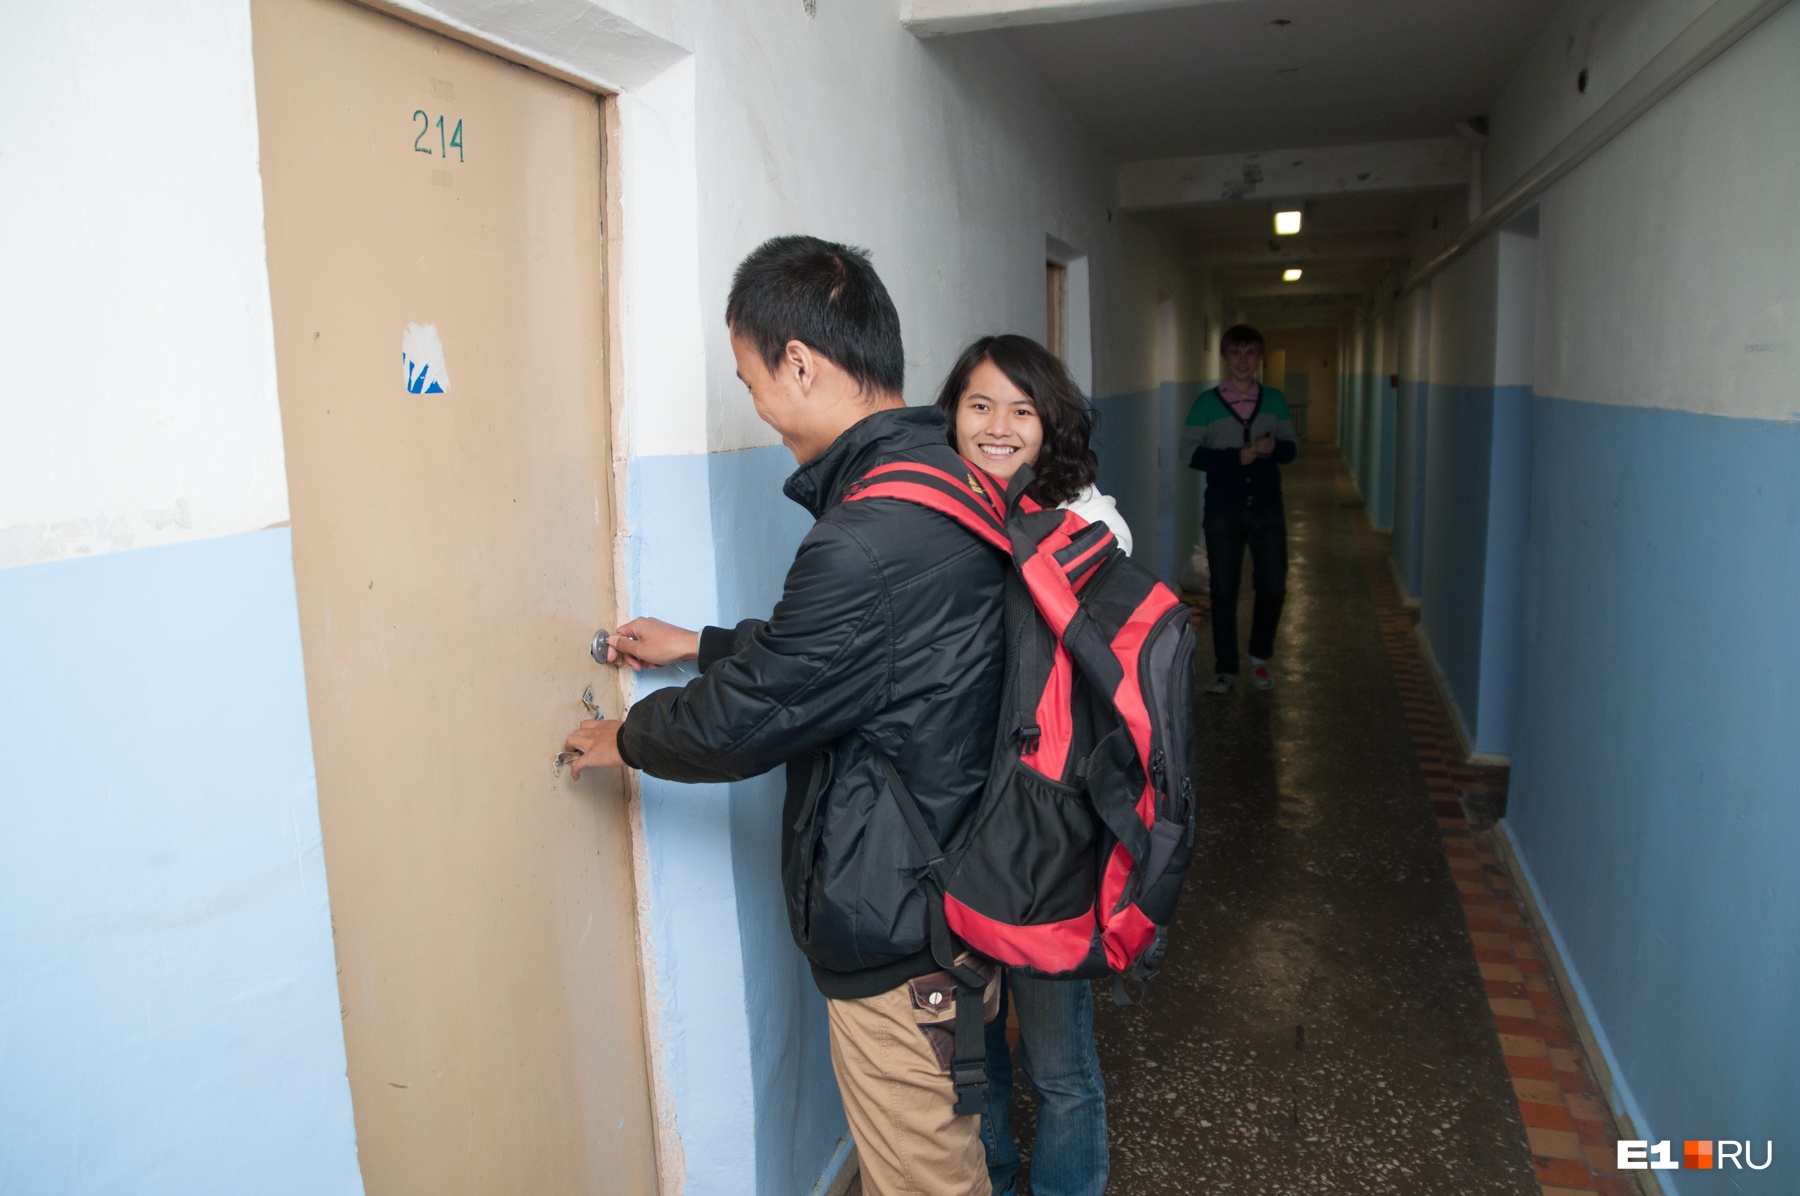 В УрФУ устроят спецпроверку студентам, которые возвращаются из Китая